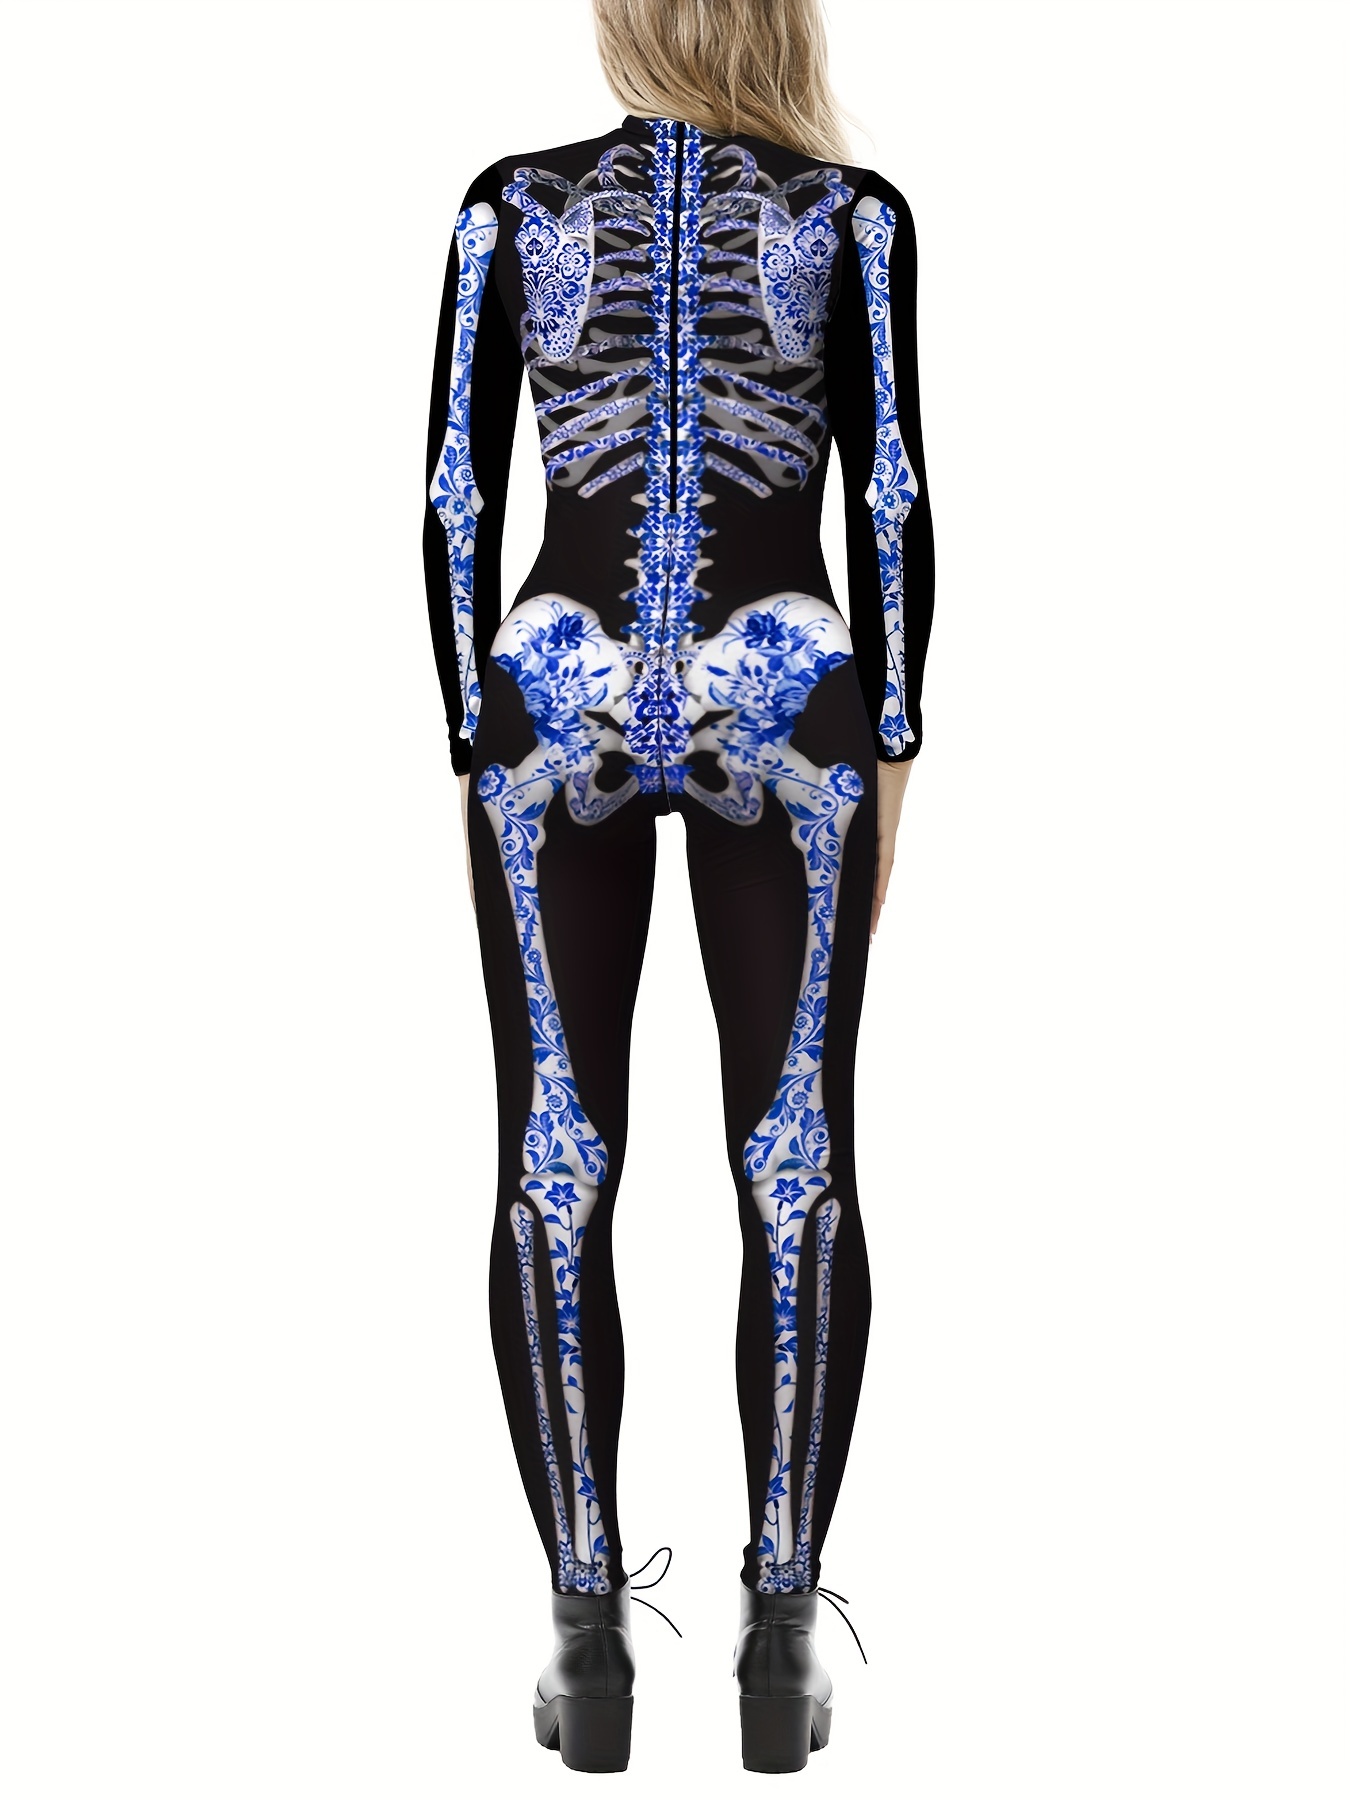 Skeleton Halloween Costume Leggings - Skeleton Tights for Women